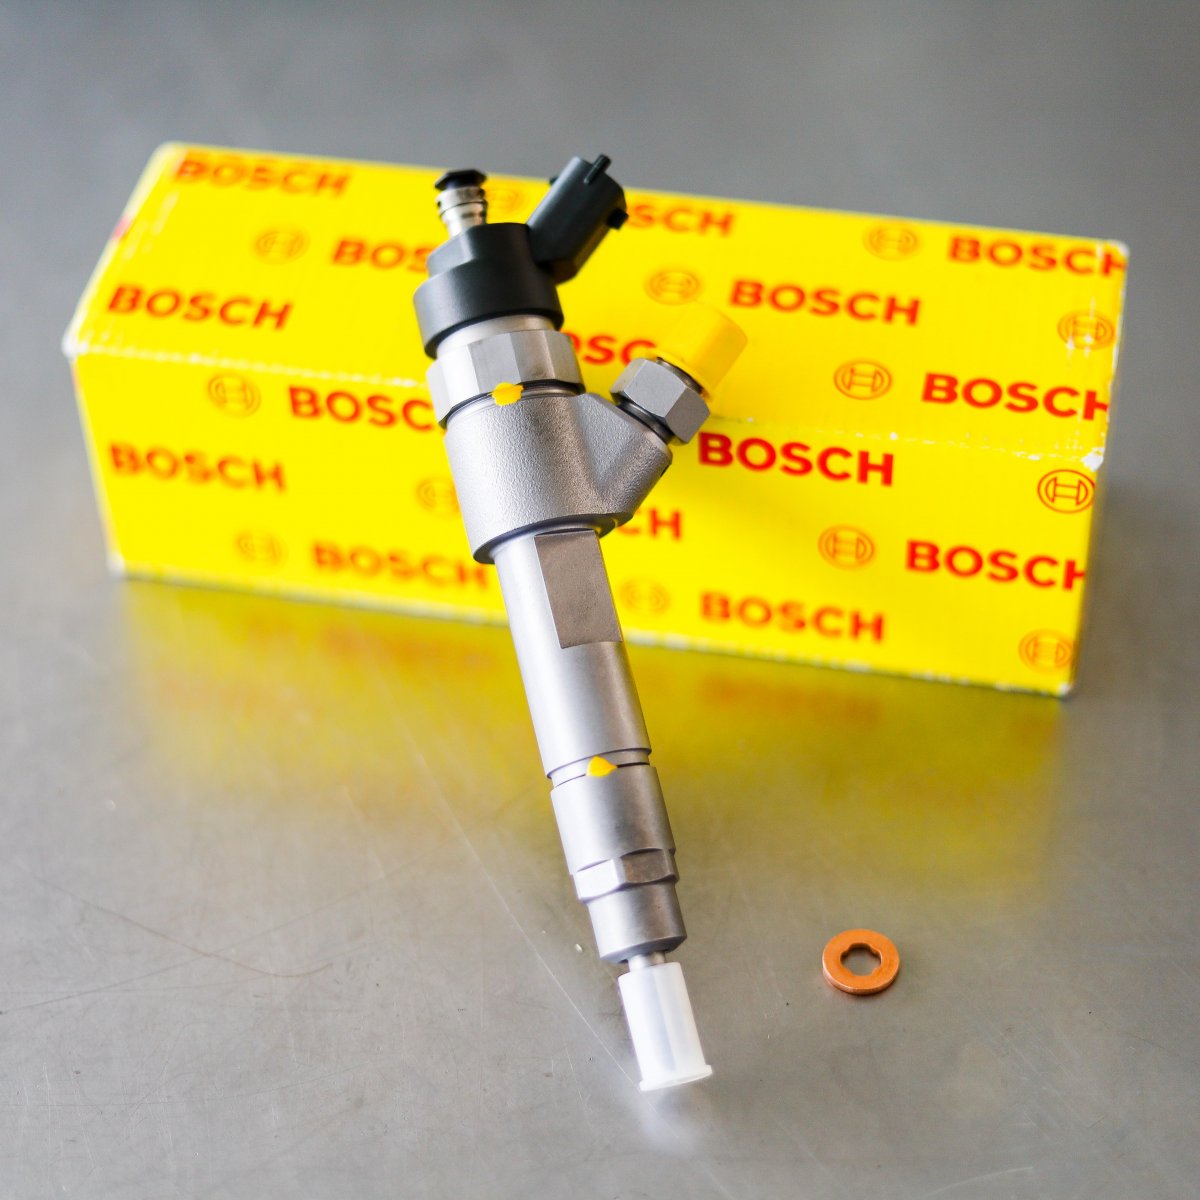 Wtryskiwacz Bosch po naprawie gotowy do wysyłki do Klienta na gwarancji - niska cena